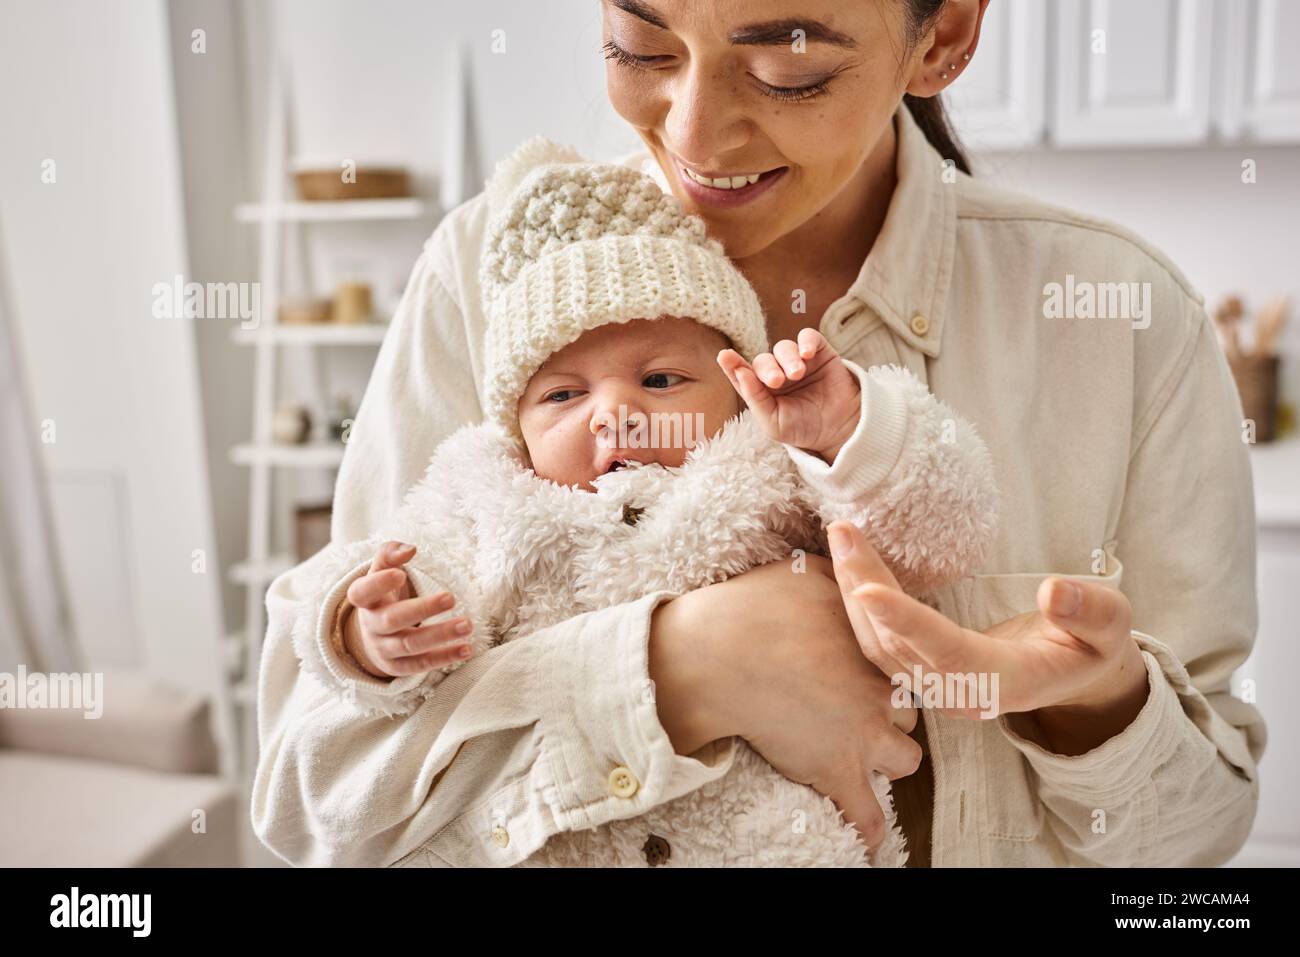 Attraktive, liebevolle Mutter in bequemen Haushaltswaren, die ihren kleinen Jungen warm hält, moderne Erziehung Stockfoto